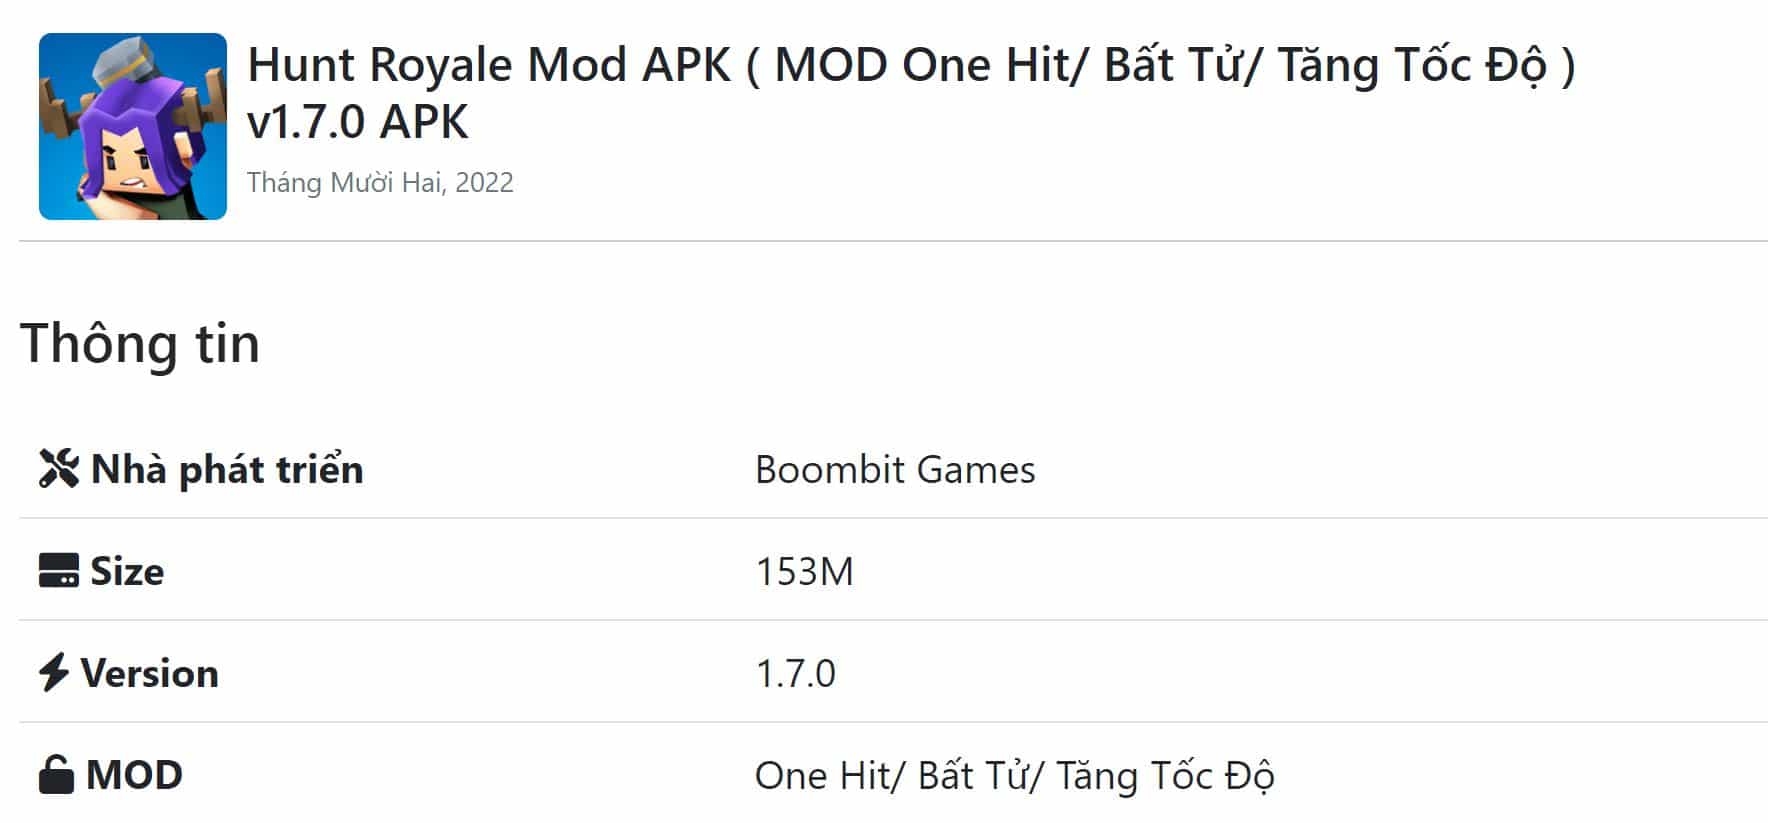 Hunt Royale Mod APK v1.7.0